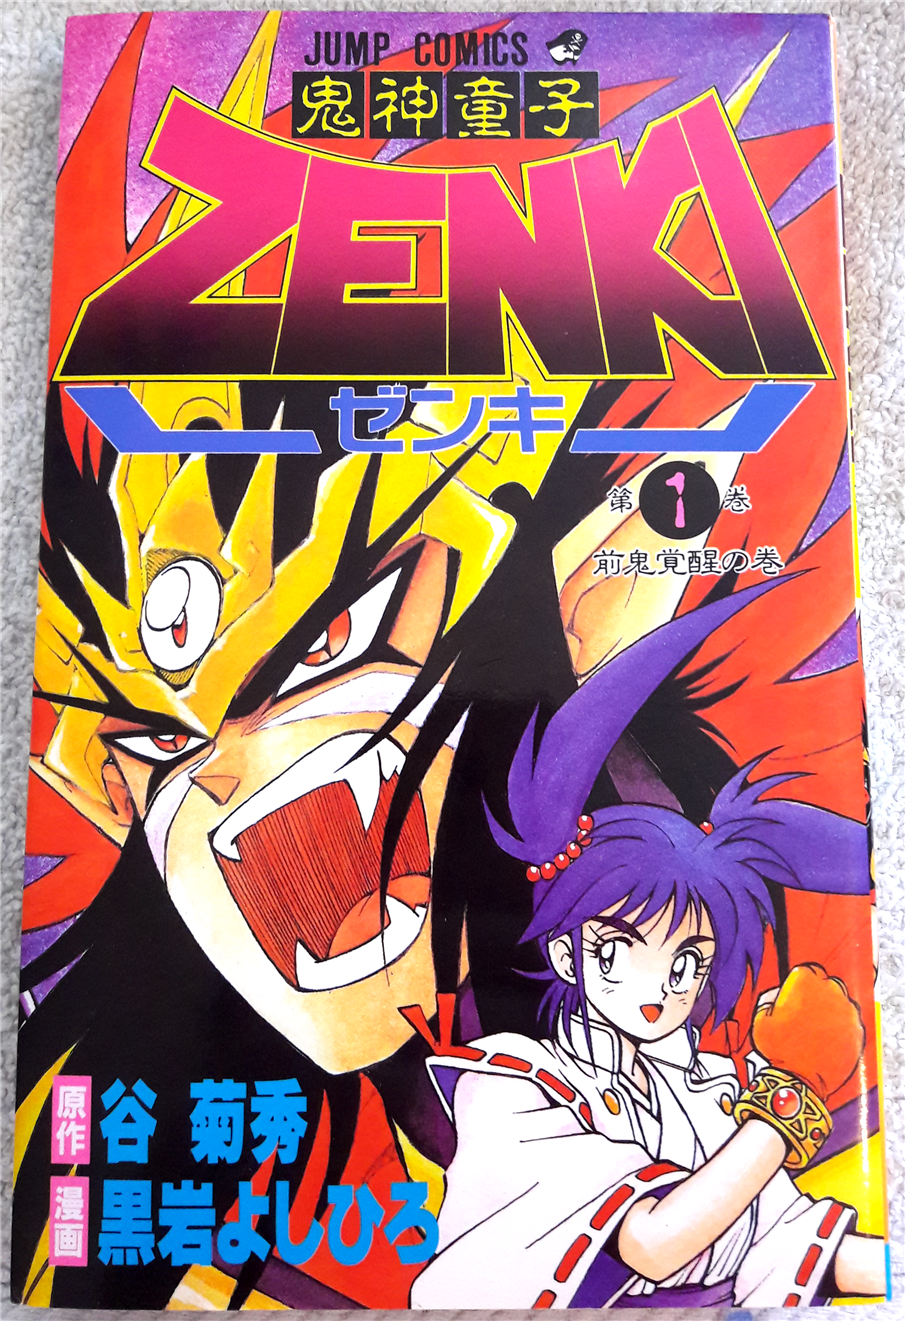 Volume 1 | Kishin Douji Zenki Wikia | Fandom